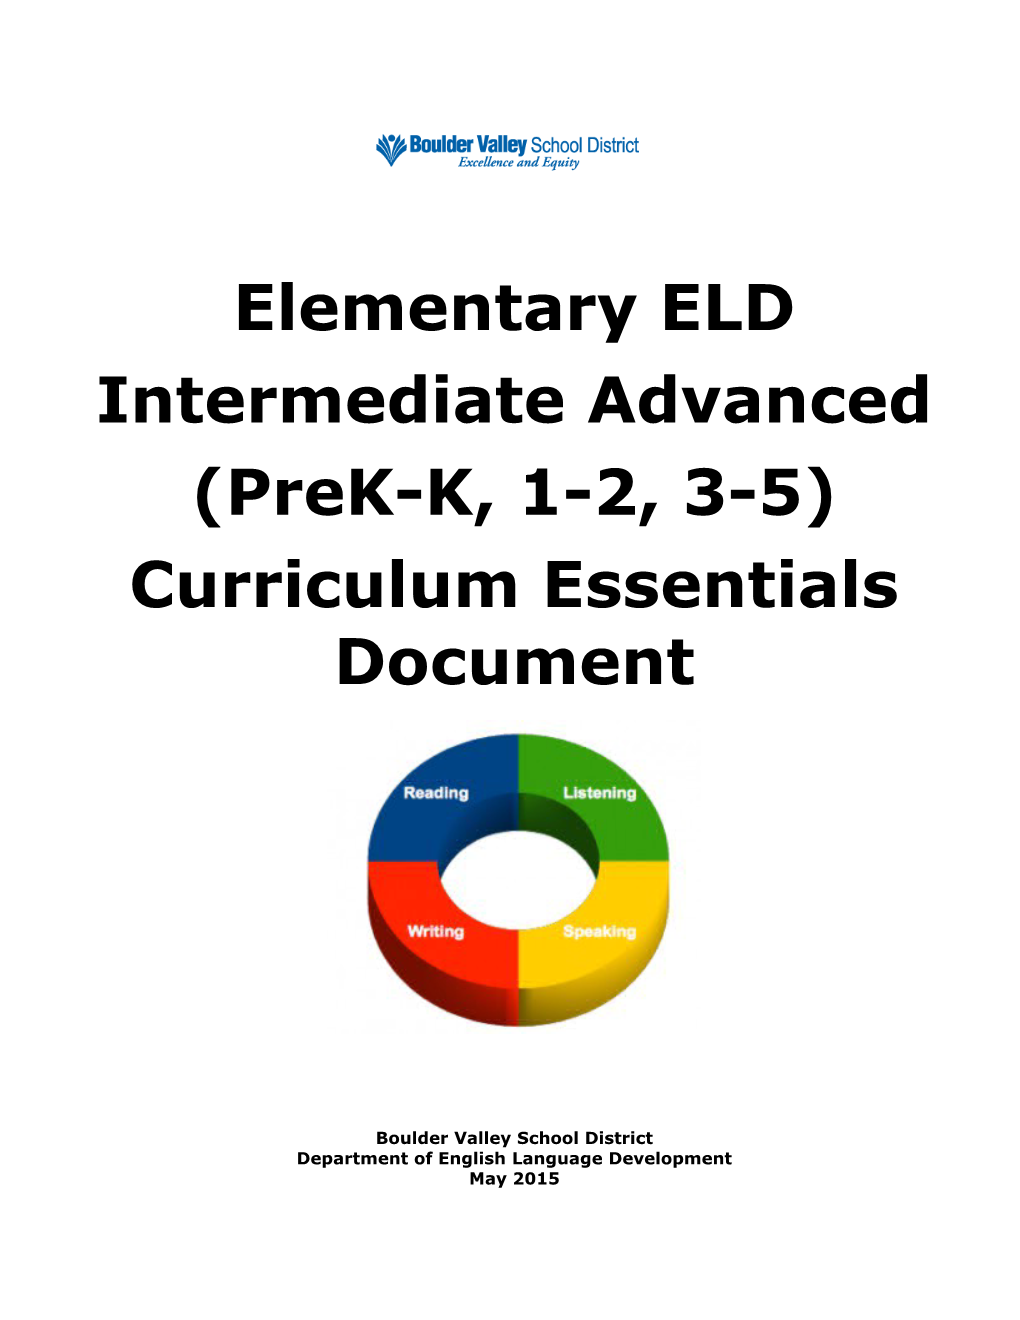 Elementary ELD Beginner Intermediate (Prek-K, 1-2, 3-5)